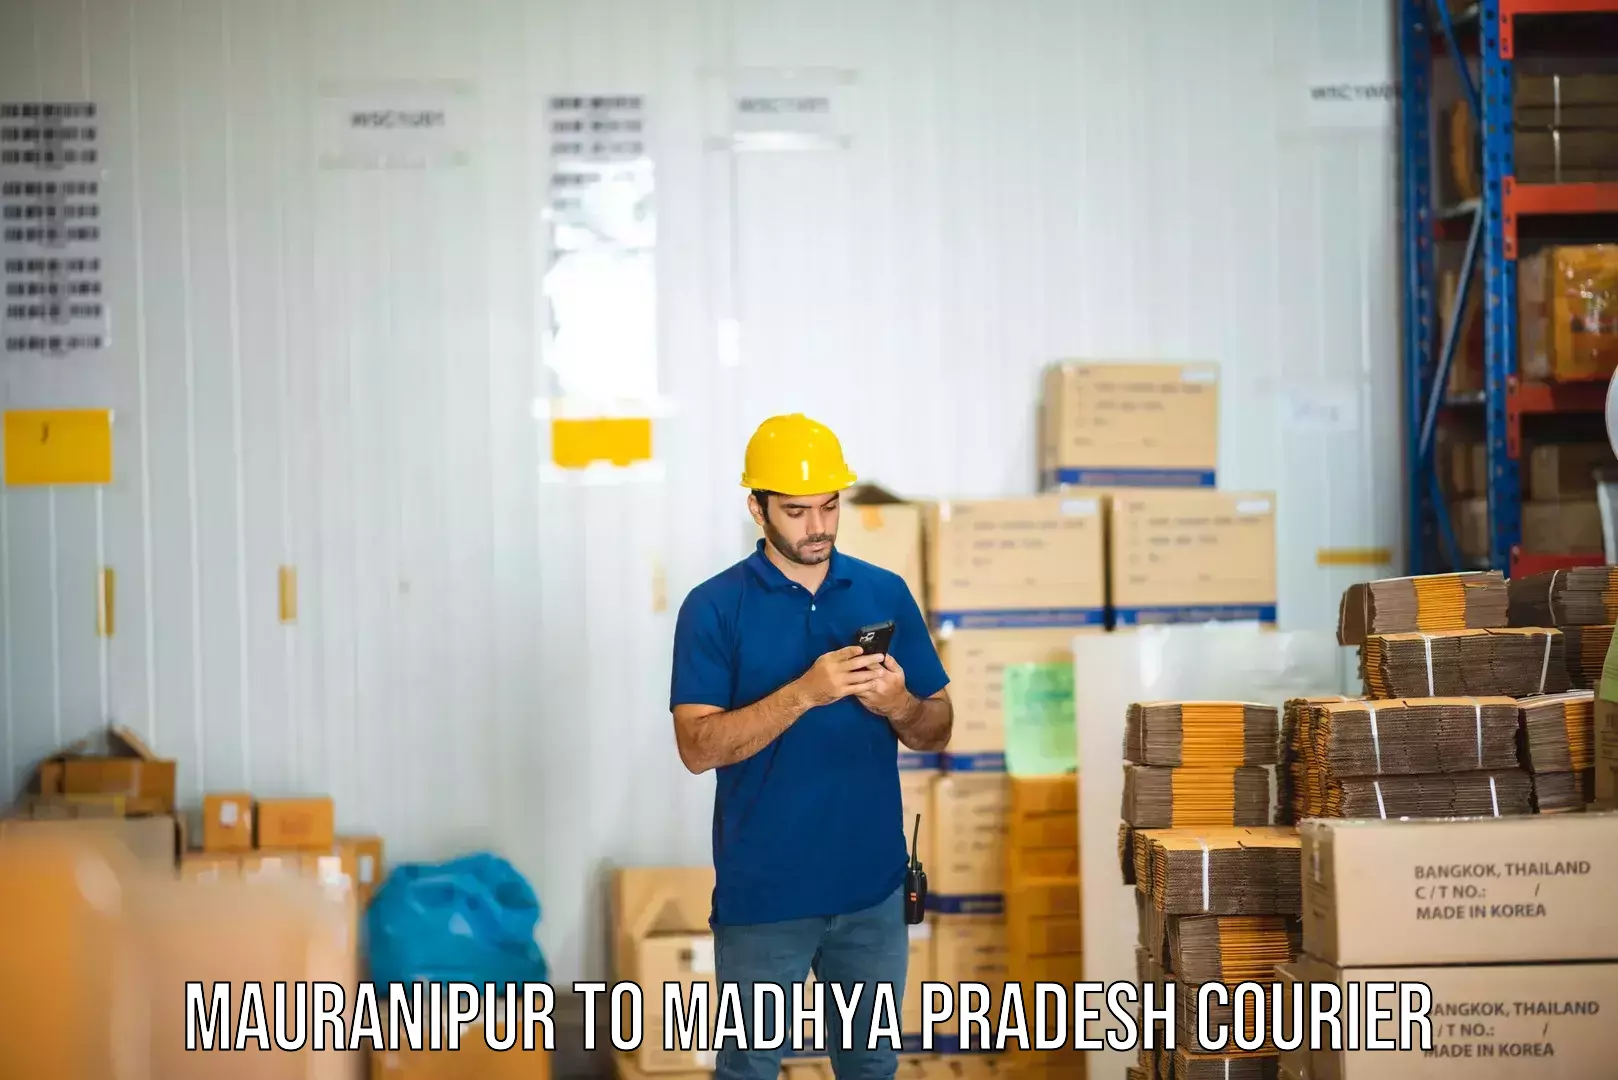 Urban courier service Mauranipur to Madhya Pradesh